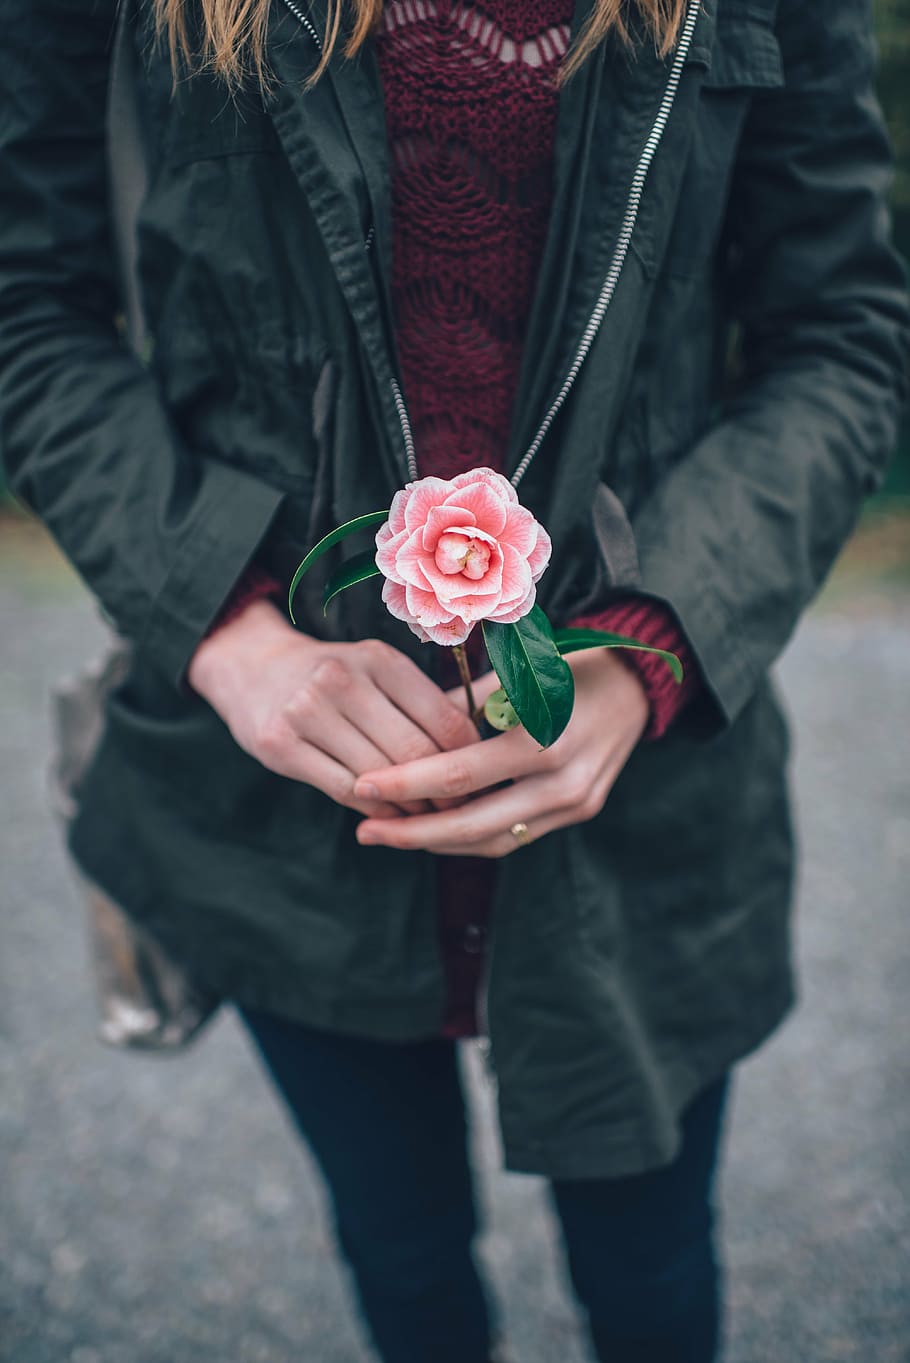 fotografia, mulher, preto, jaqueta, exploração, rosa, flor, segurando flor, mãos, rosa - flor